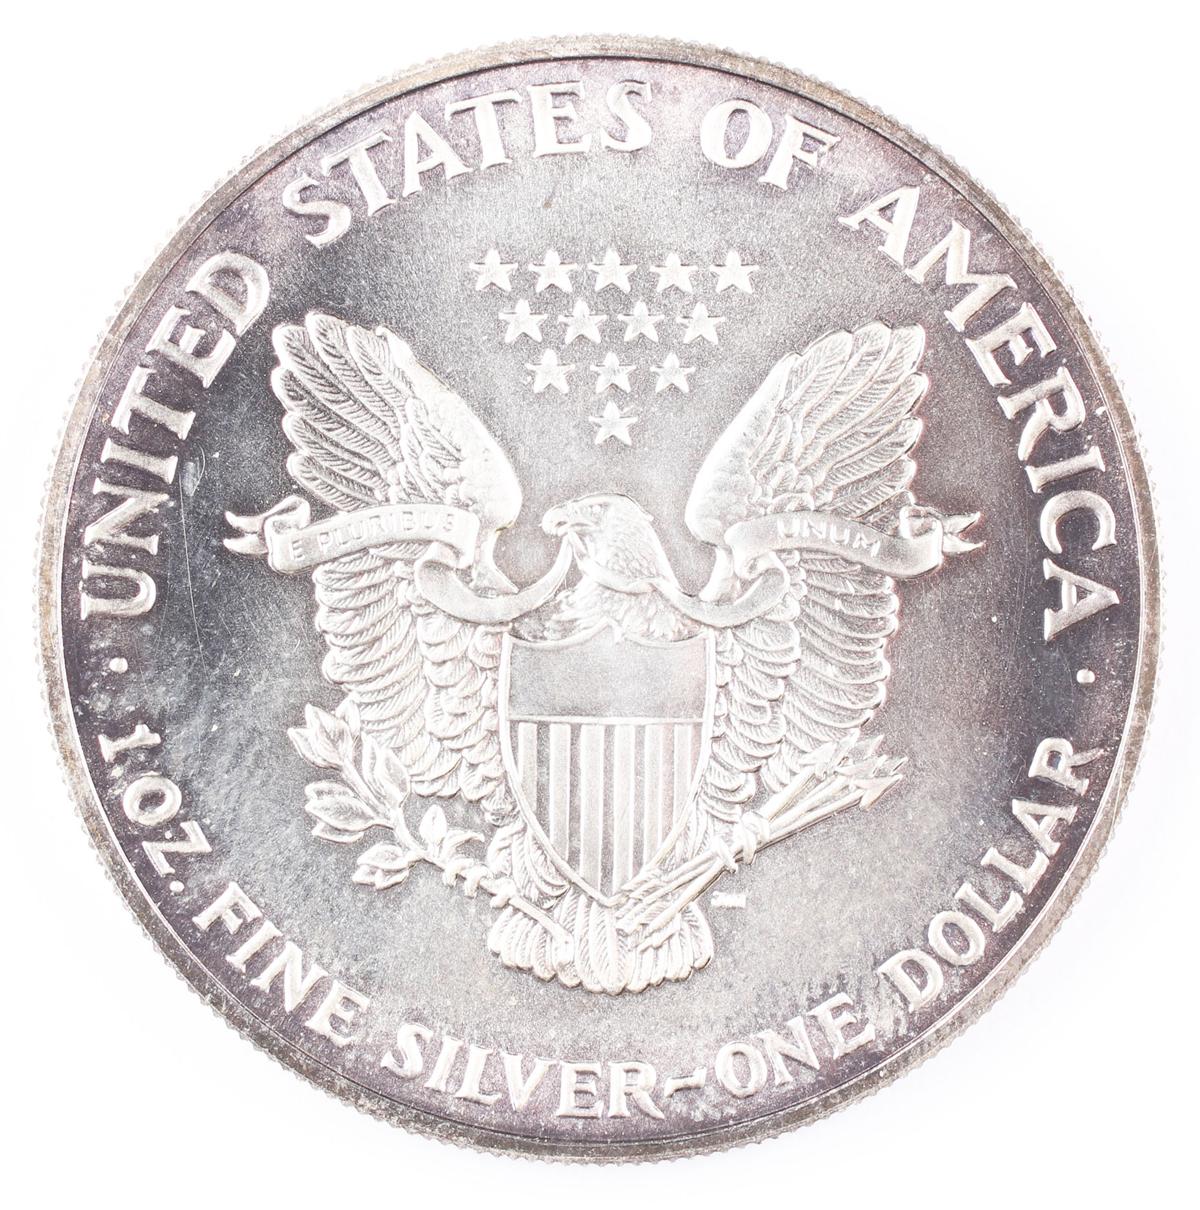 1990  $1 American Silver Eagle, 1oz. Fine Silver